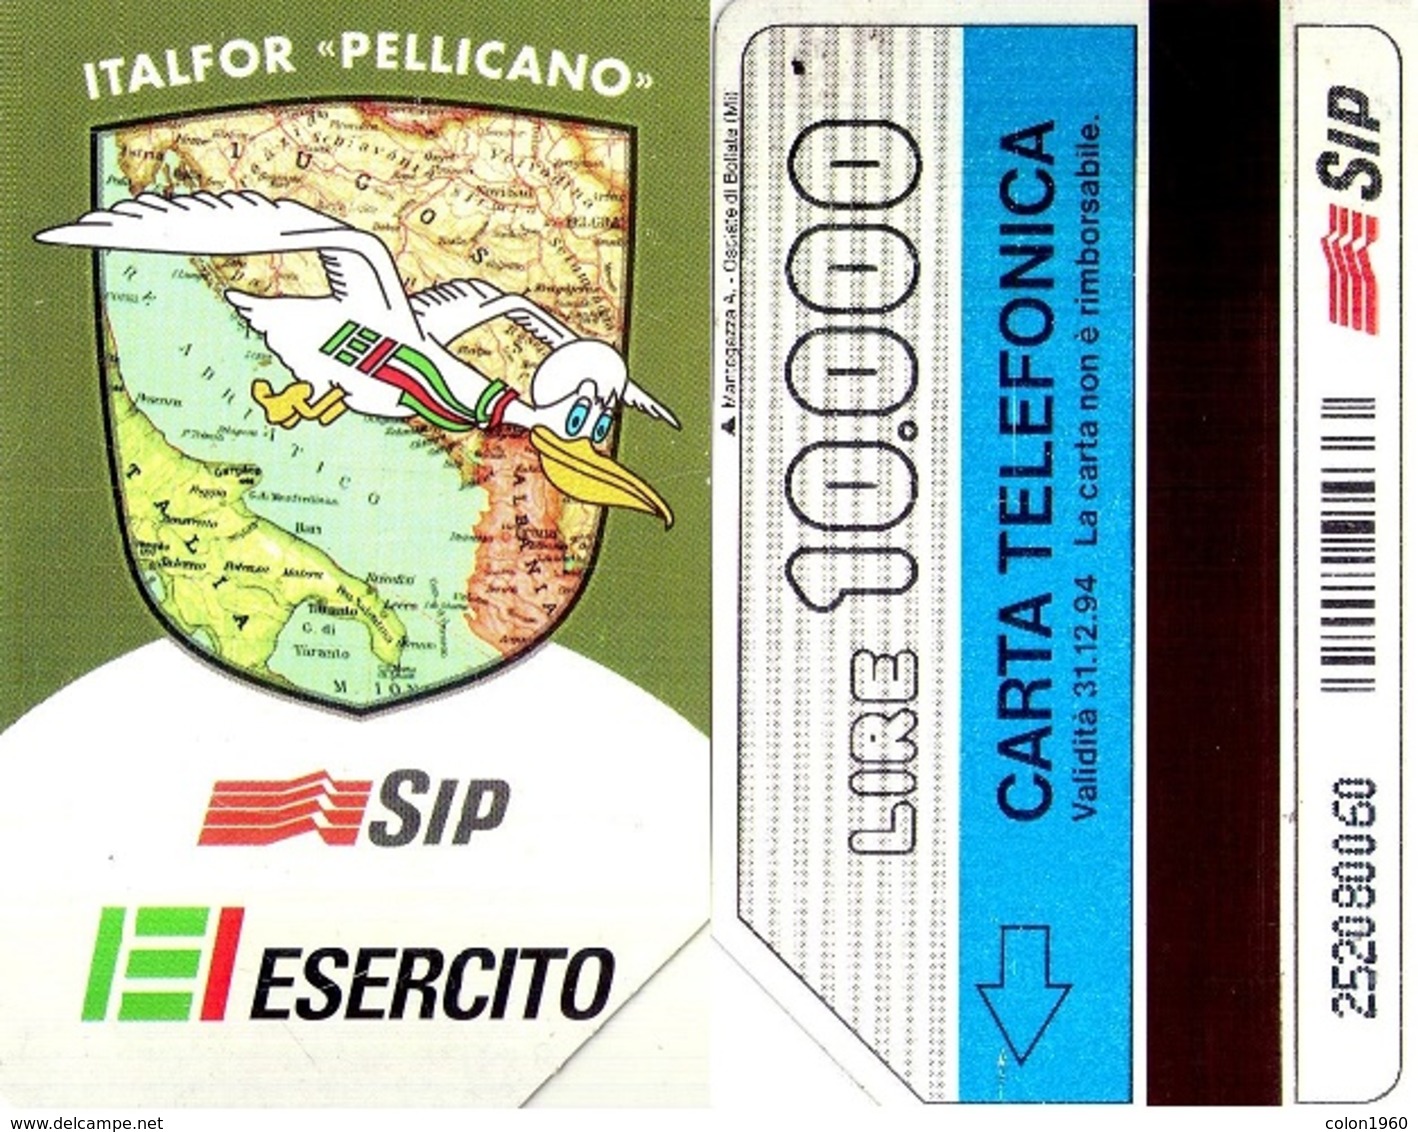 TARJETA TELEFONICA DE ITALIA. ITALFOR "PELLICANO", EJERCITO, 31-12-94. 10000L. 2290. (123) - Armée